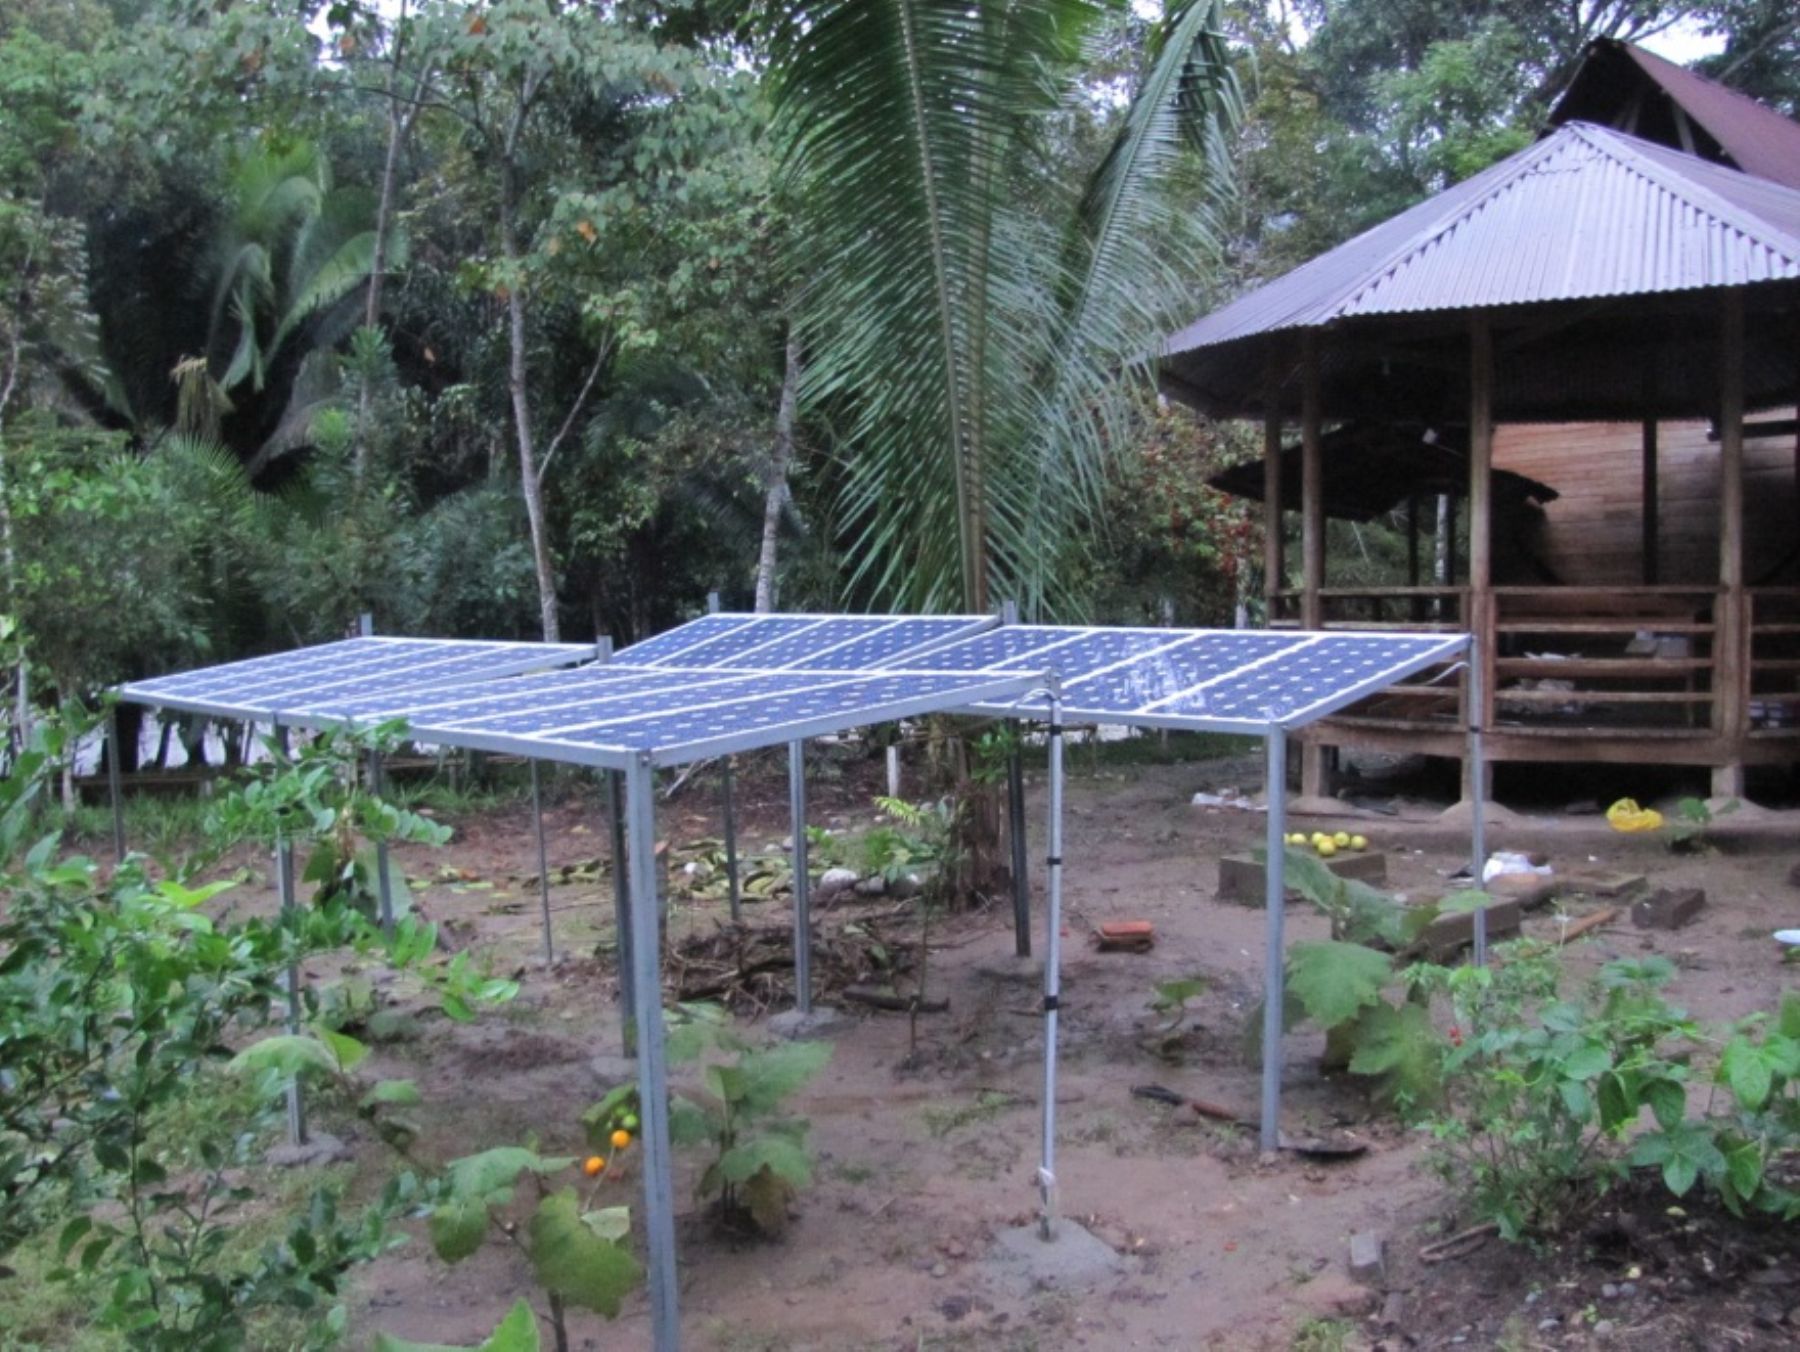 Instalan 16 paneles solares en la reserva nacional Río Abiseo, en San Martín, para transformar la energía solar directamente en energía eléctrica. Foto: Sernanp.